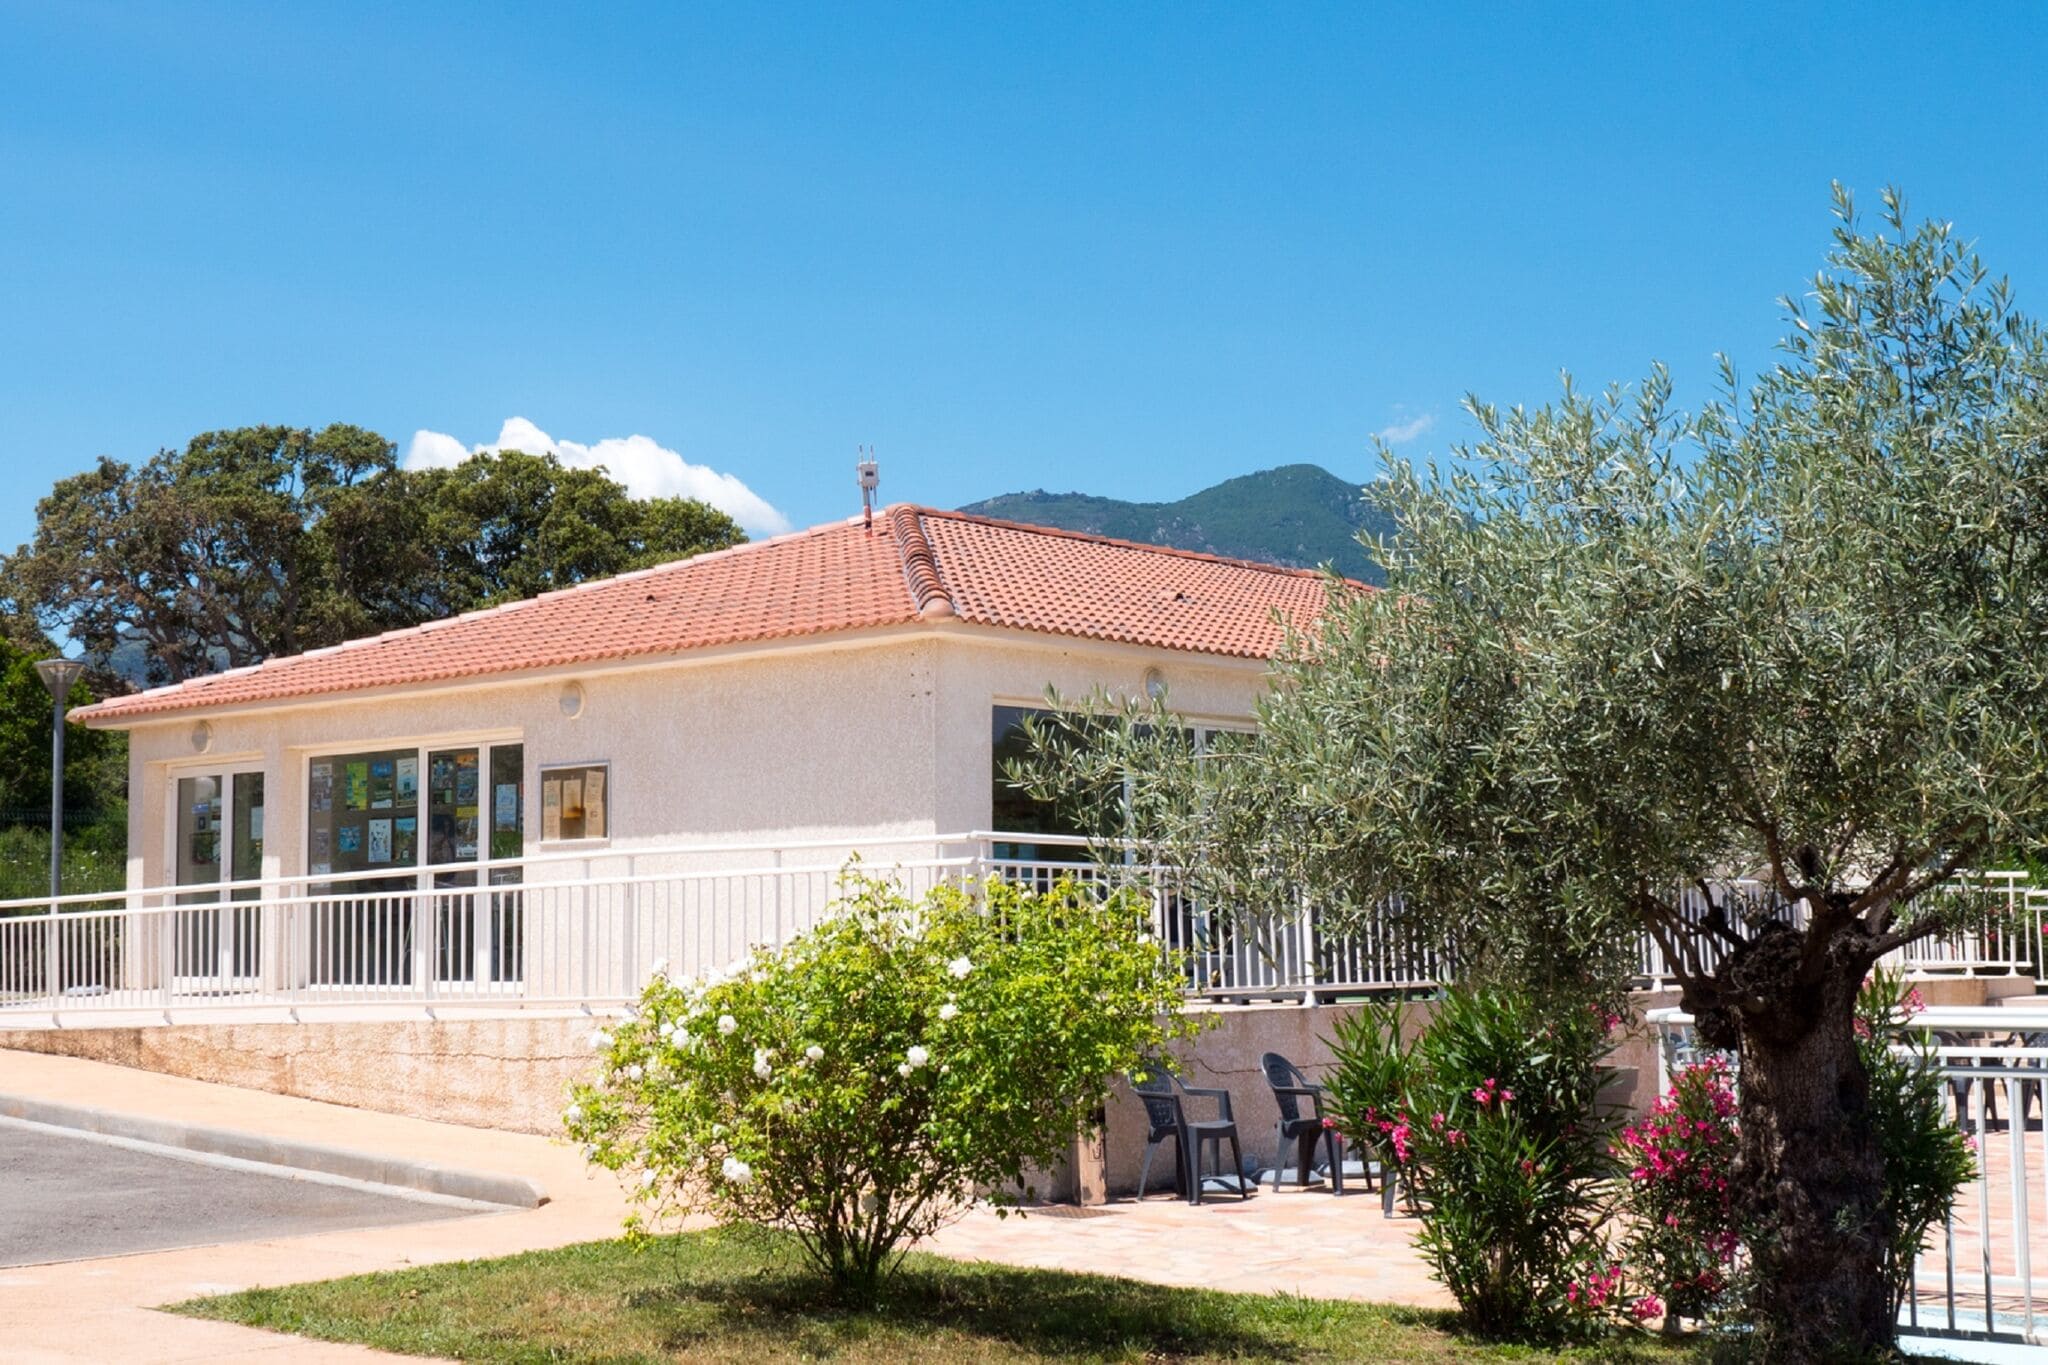 Mooi zeer comfortabel ingericht vakantiehuis op Corsica